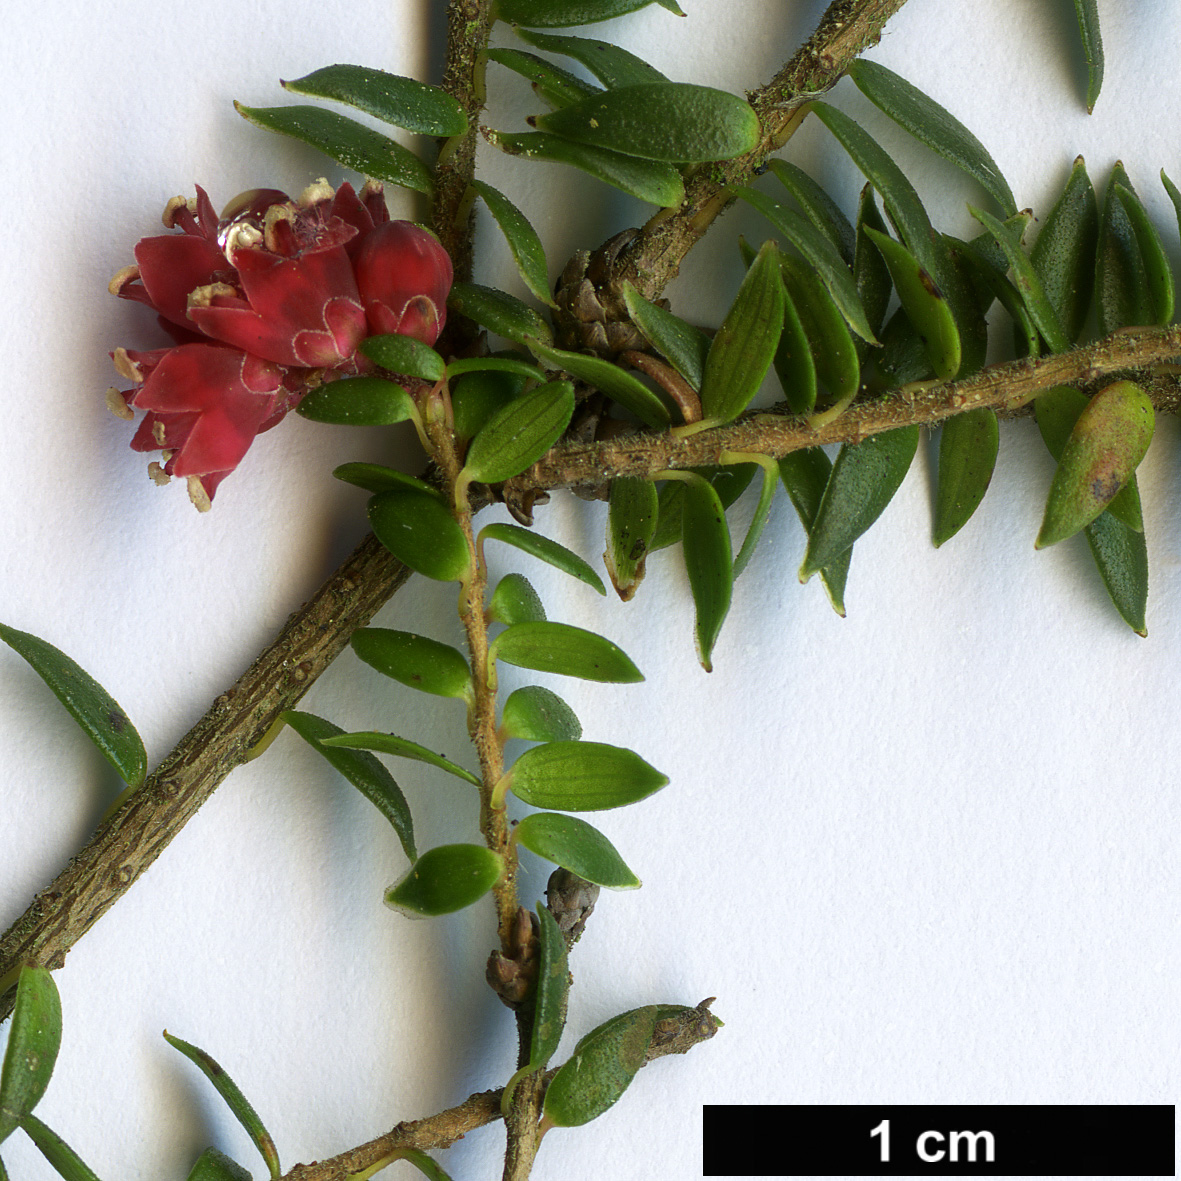 High resolution image: Family: Ericaceae - Genus: Trochocarpa - Taxon: thymifolia